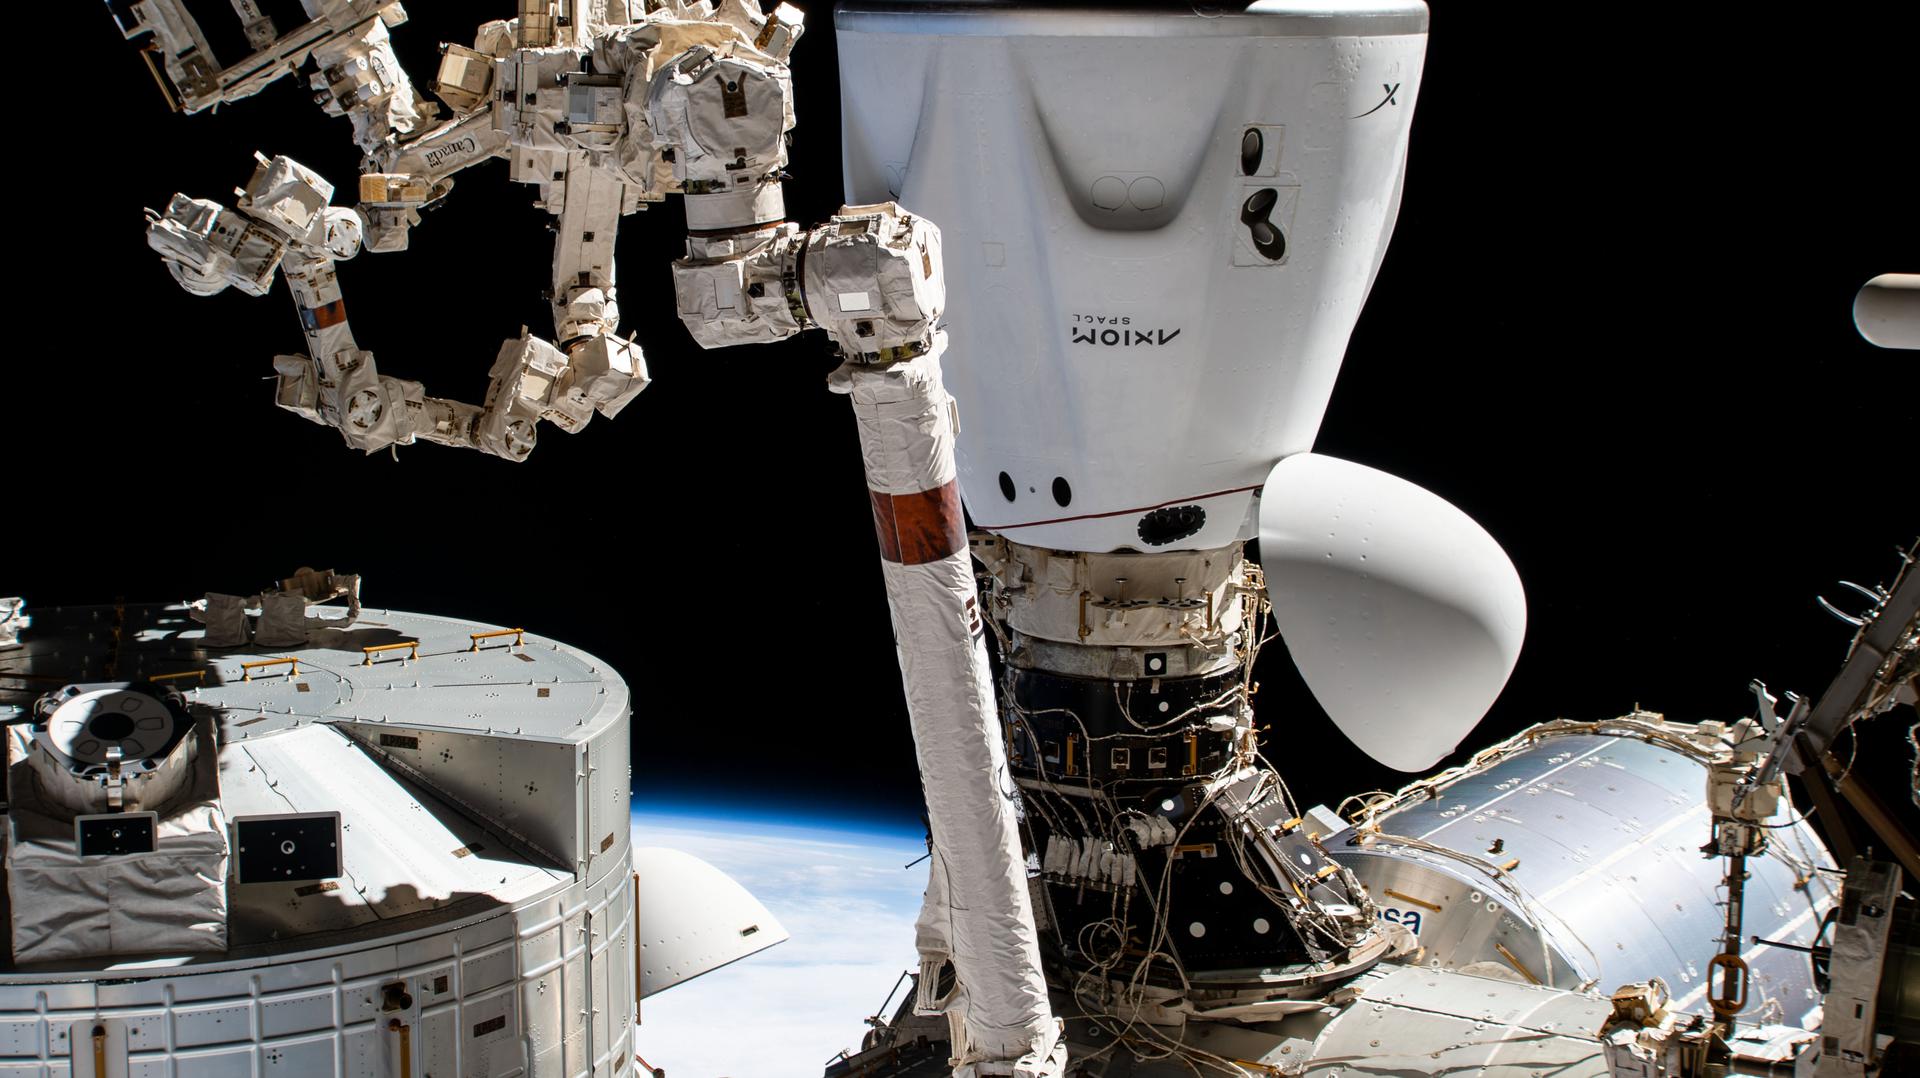 स्पेसएक्स ड्रैगन एंडेवर चालक दल के जहाज को हार्मनी मॉड्यूल के अंतरिक्ष-सामना करने वाले अंतरराष्ट्रीय डॉकिंग एडेप्टर के लिए डॉक किया गया है। एंडेवर ने चार स्वयंसिद्ध मिशन 1 अंतरिक्ष यात्रियों, कमांडर माइकल लोपेज़-एलेग्रिया, पायलट लैरी कॉनर, और मिशन विशेषज्ञ एटन स्टिब्बे और मार्क पाथी को कई दिनों के अनुसंधान, शिक्षा और व्यावसायिक गतिविधियों के लिए अंतर्राष्ट्रीय अंतरिक्ष स्टेशन तक पहुँचाया।